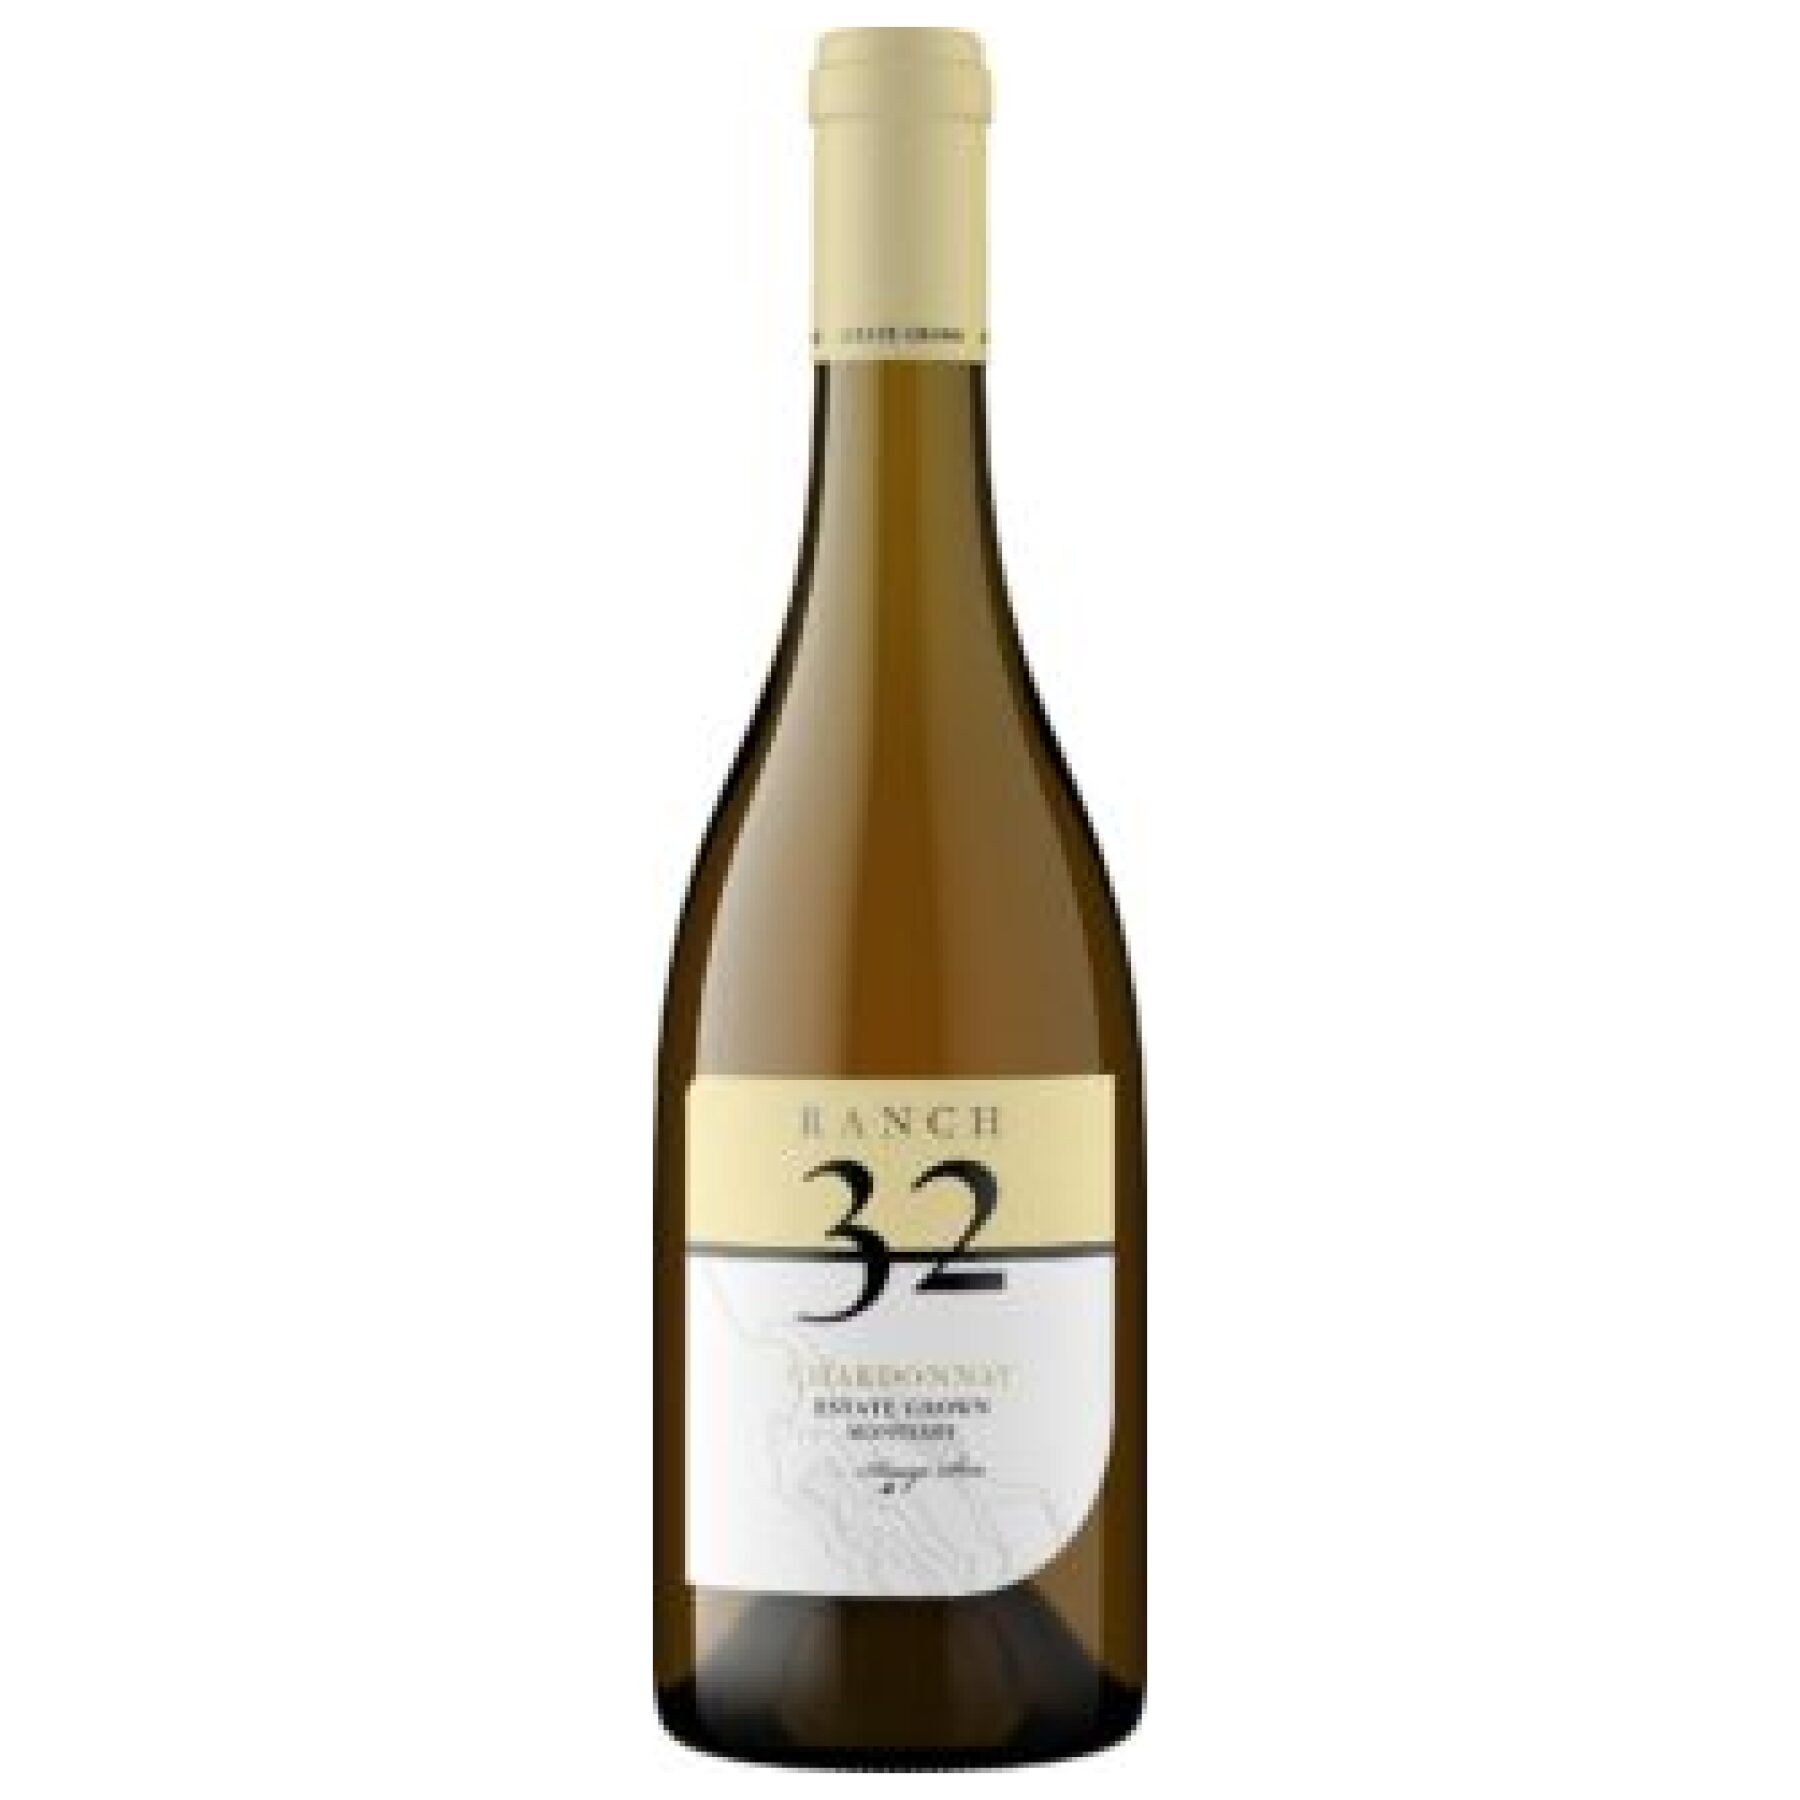 Scheid Family Wines - Usa - Kalifornien - Chardonnay - Weisswein - Ranch 32 - Trocken - Weisswein